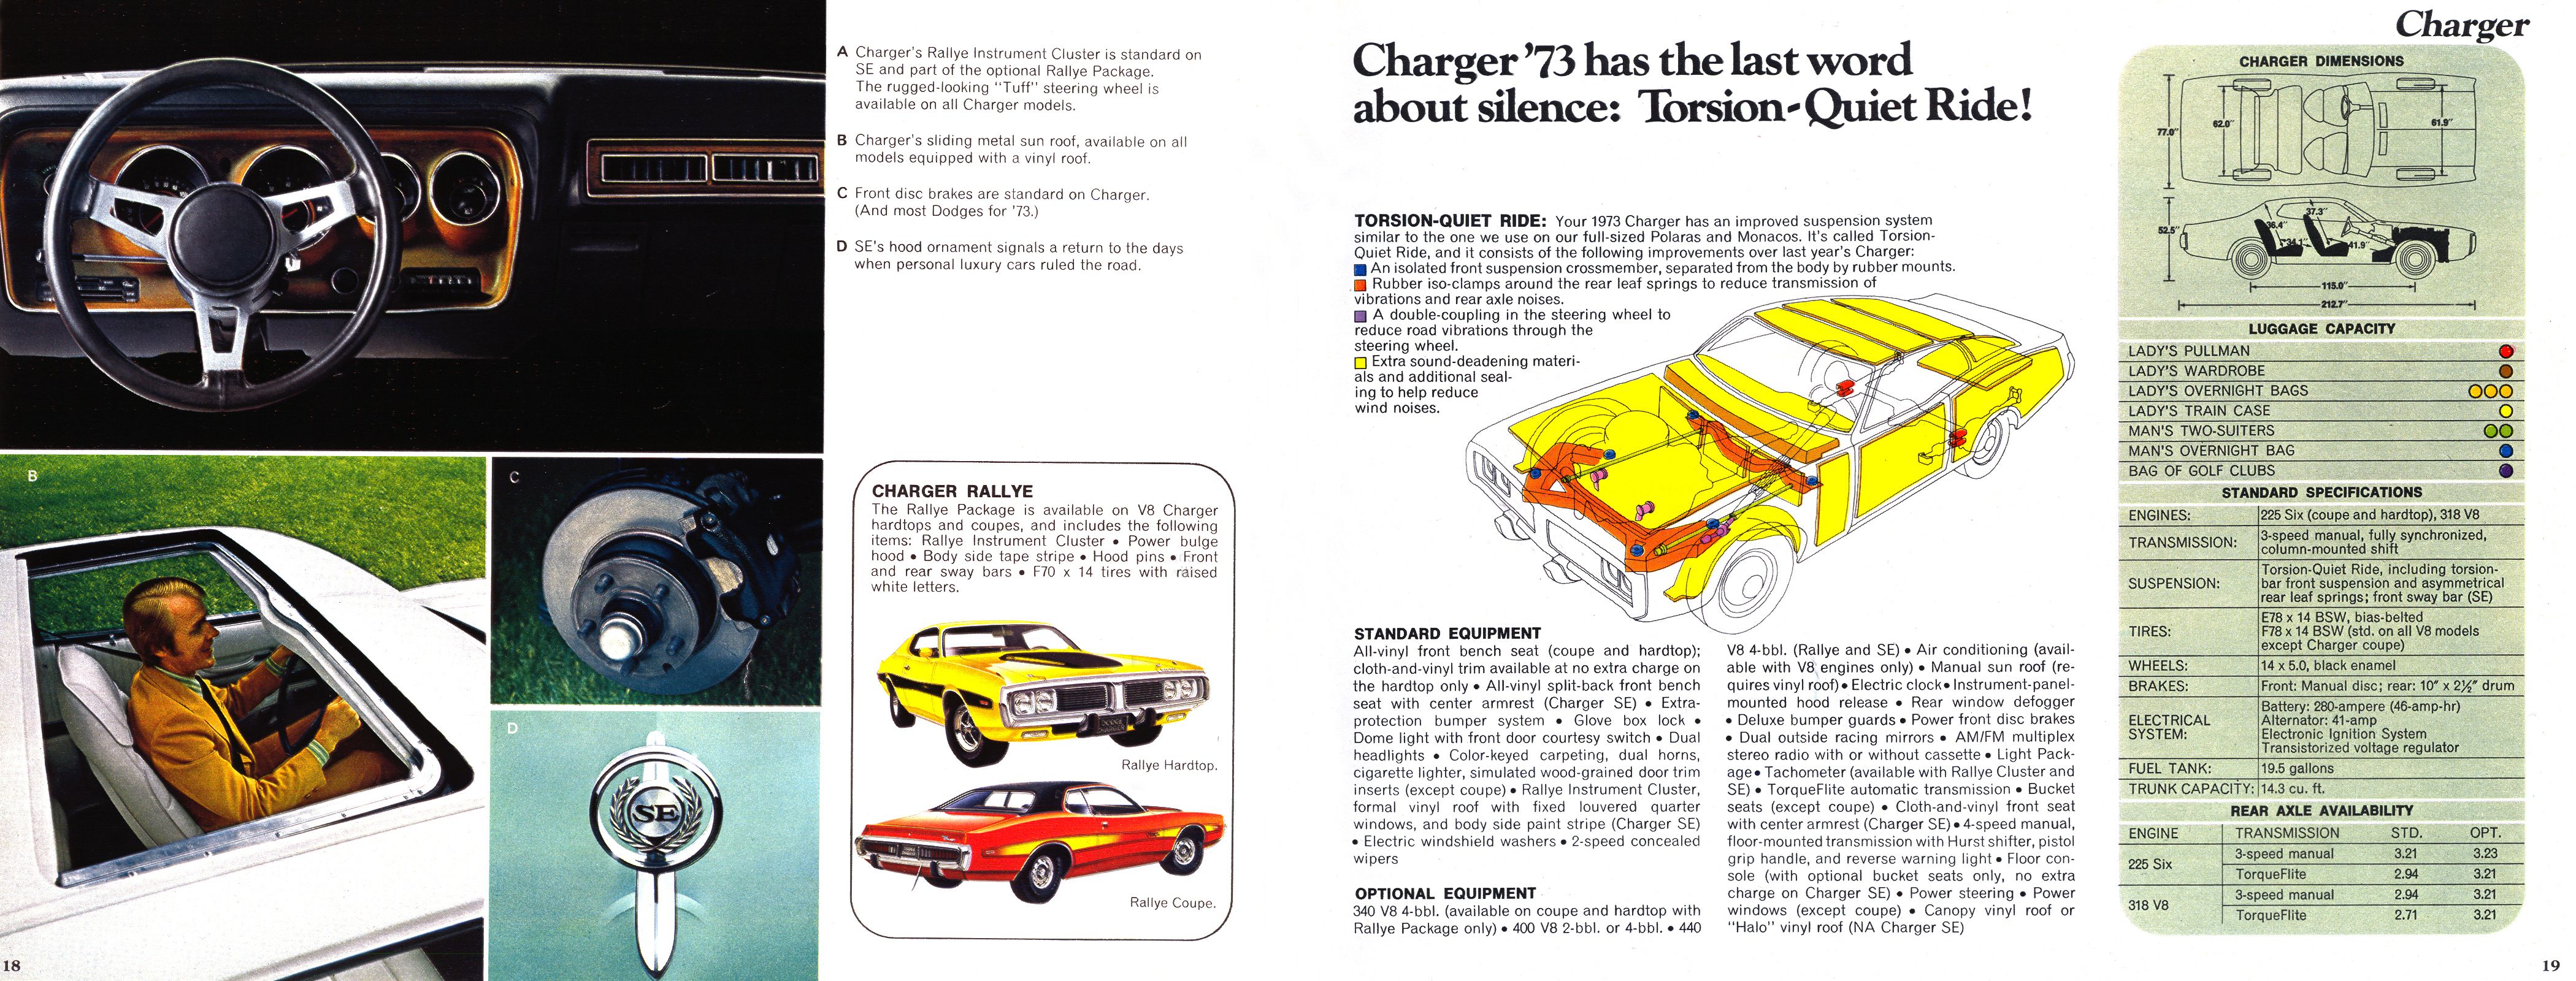 1973 Dodge Full-Line 18  amp  19